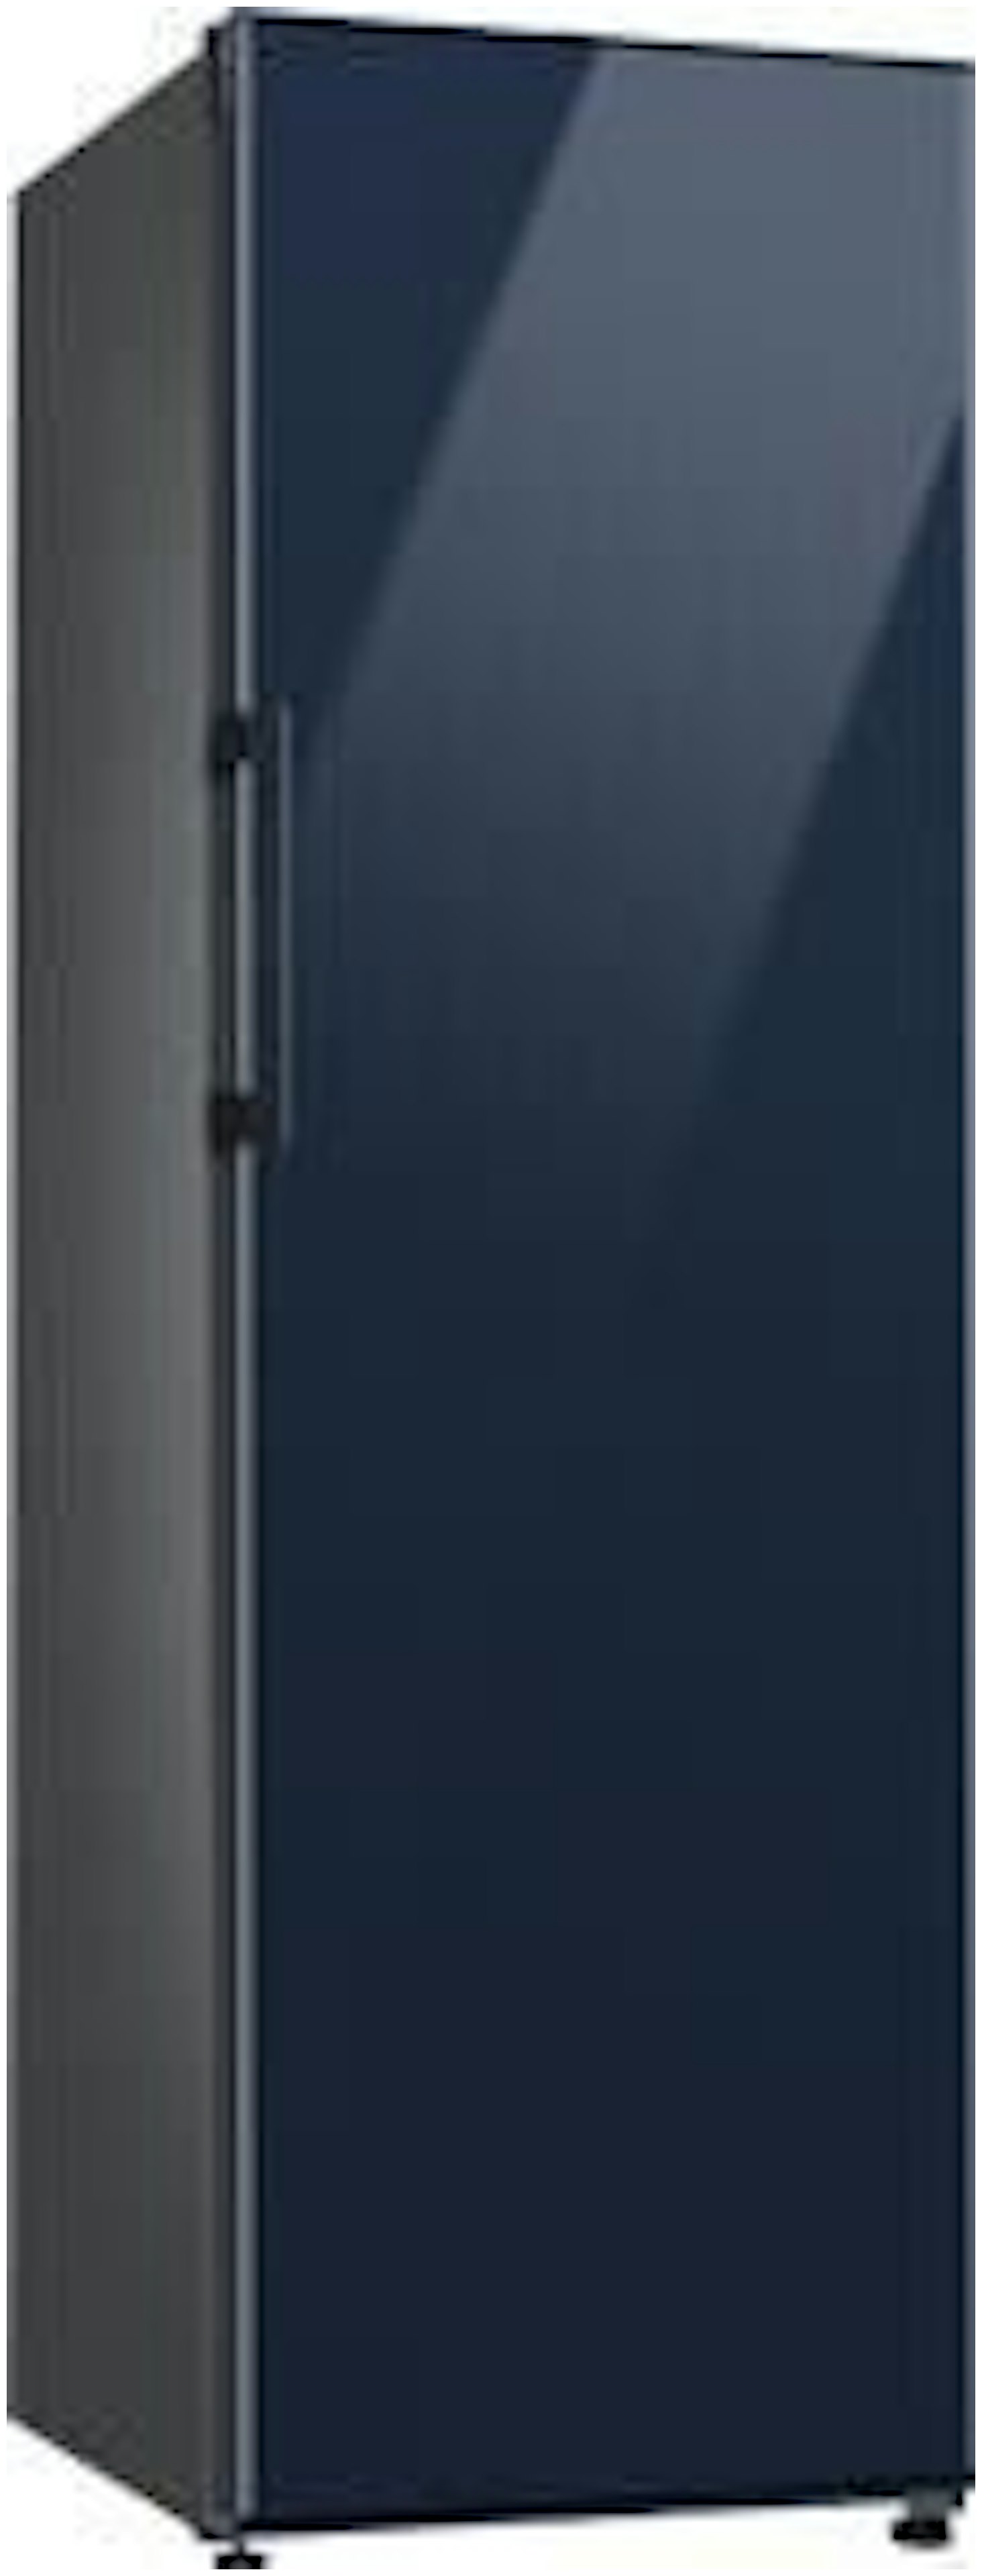 Samsung koelkast RR39A746341EF afbeelding 3